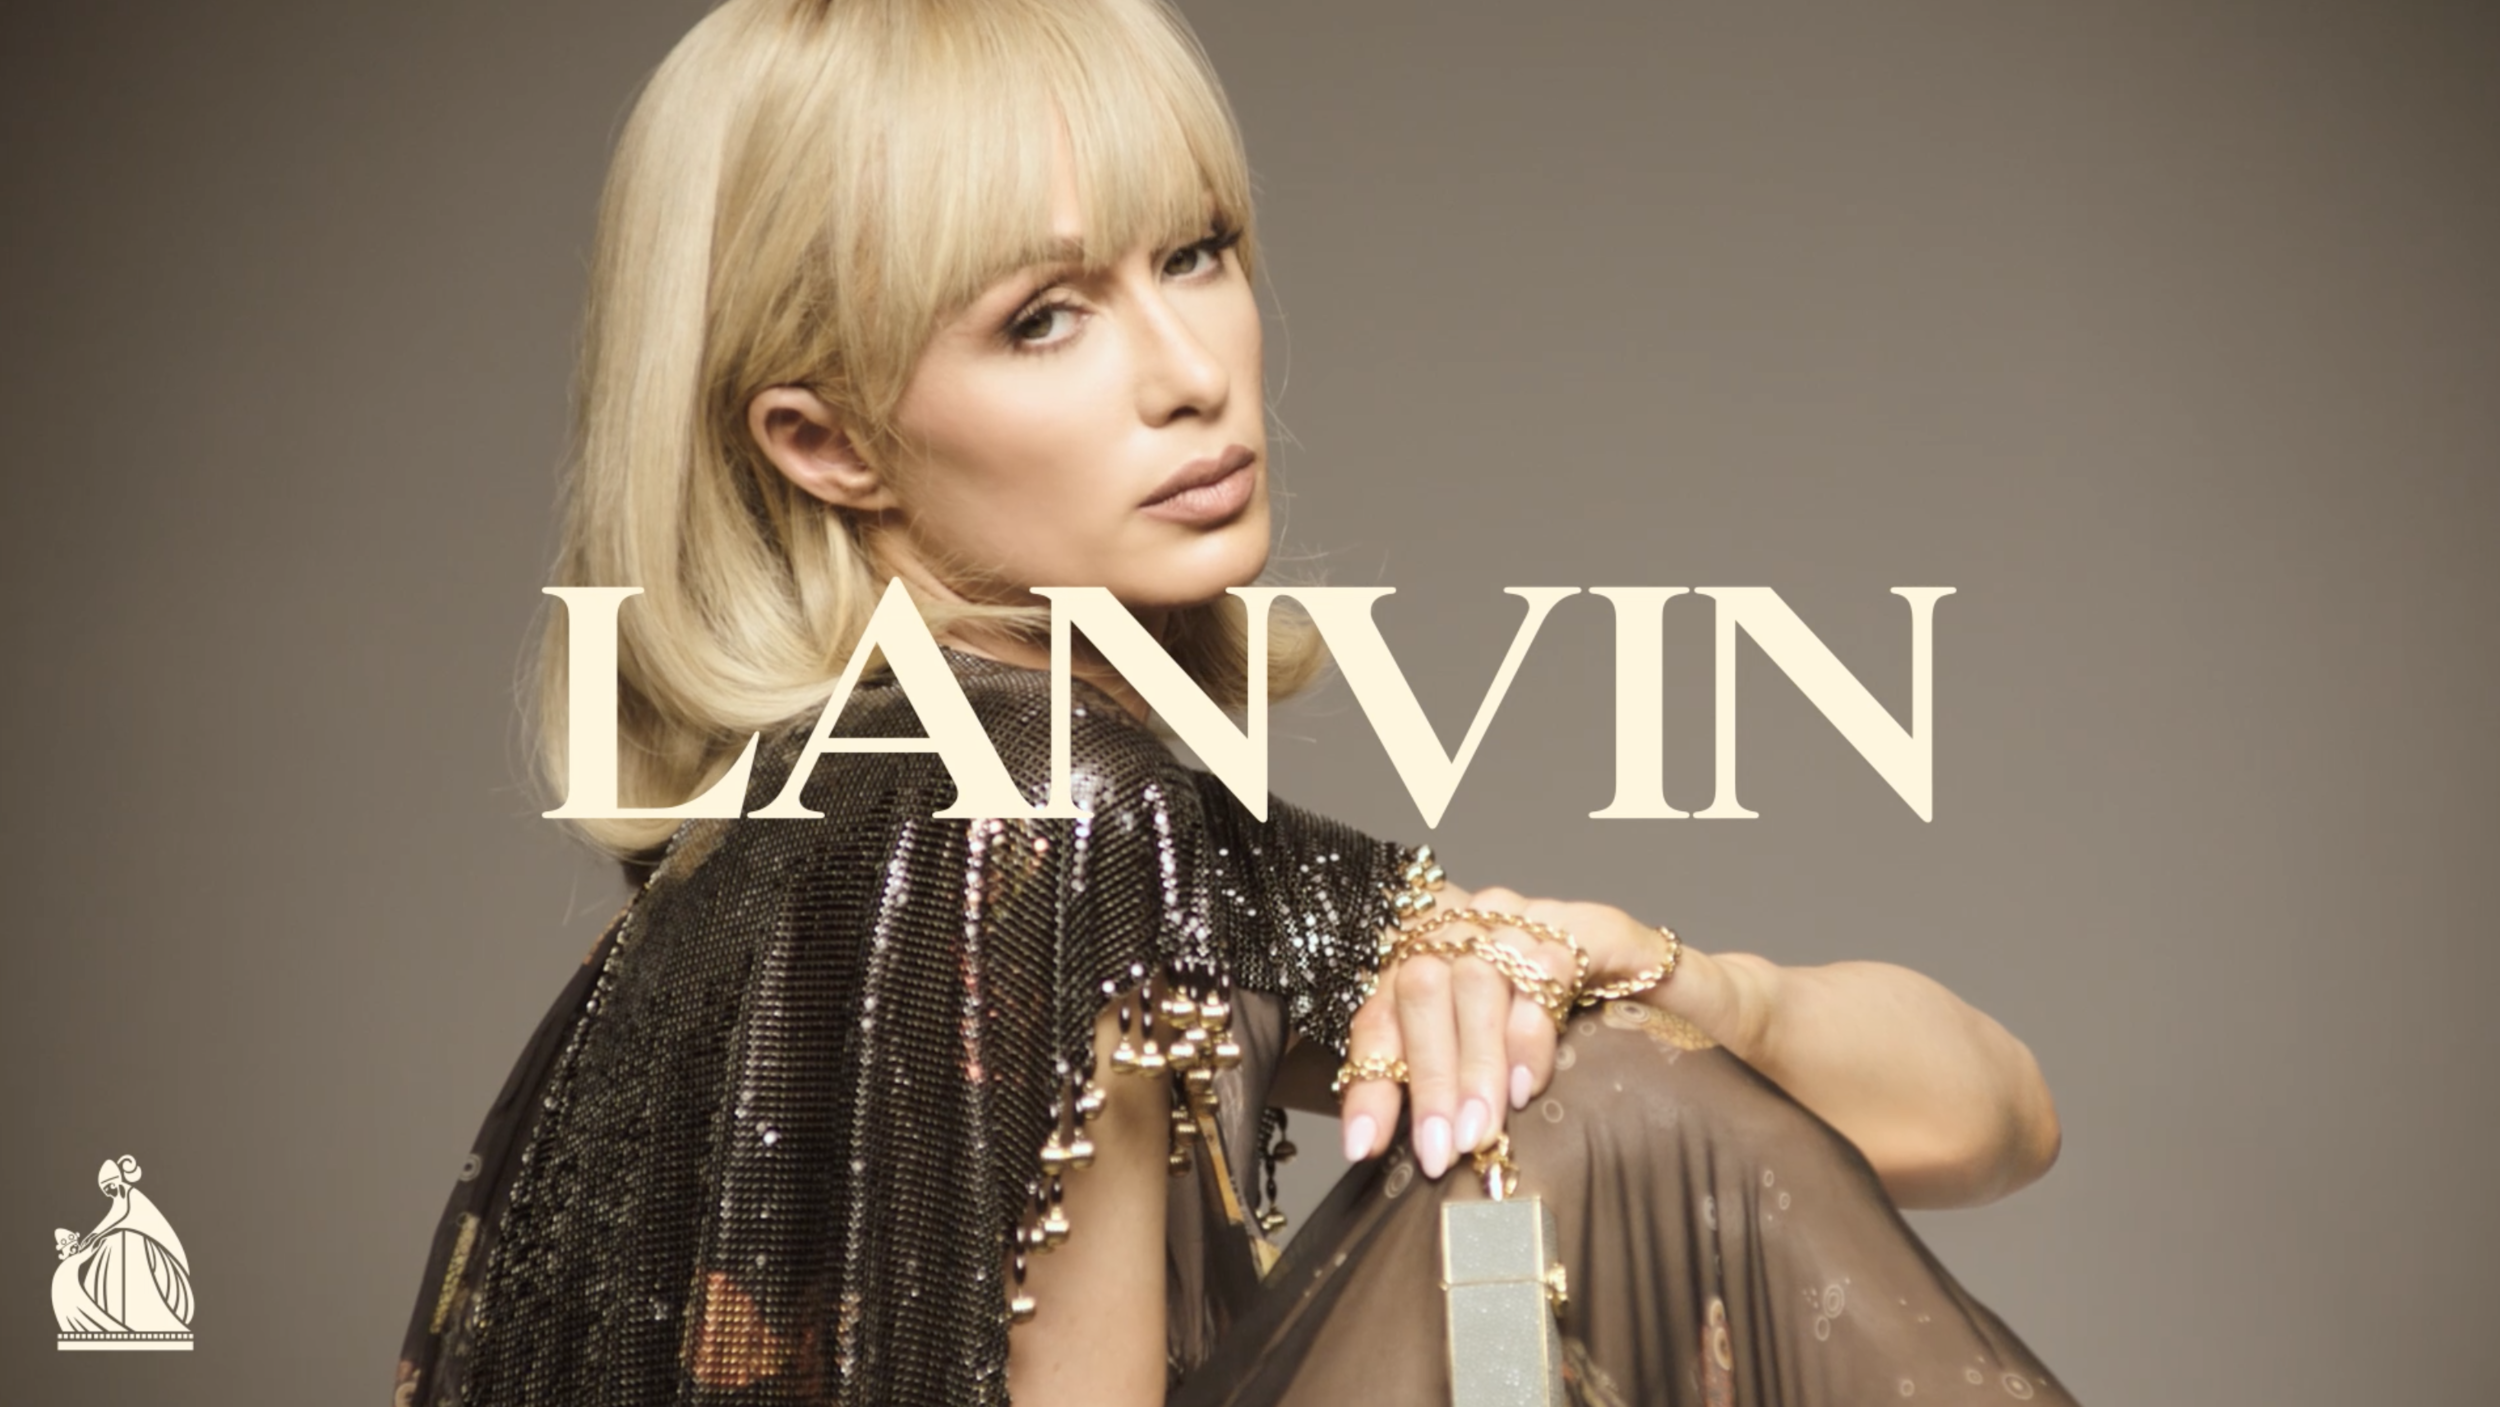 Paris Hilton by Mert Marcus Lanvin Sp 2021 Campaign (1).png